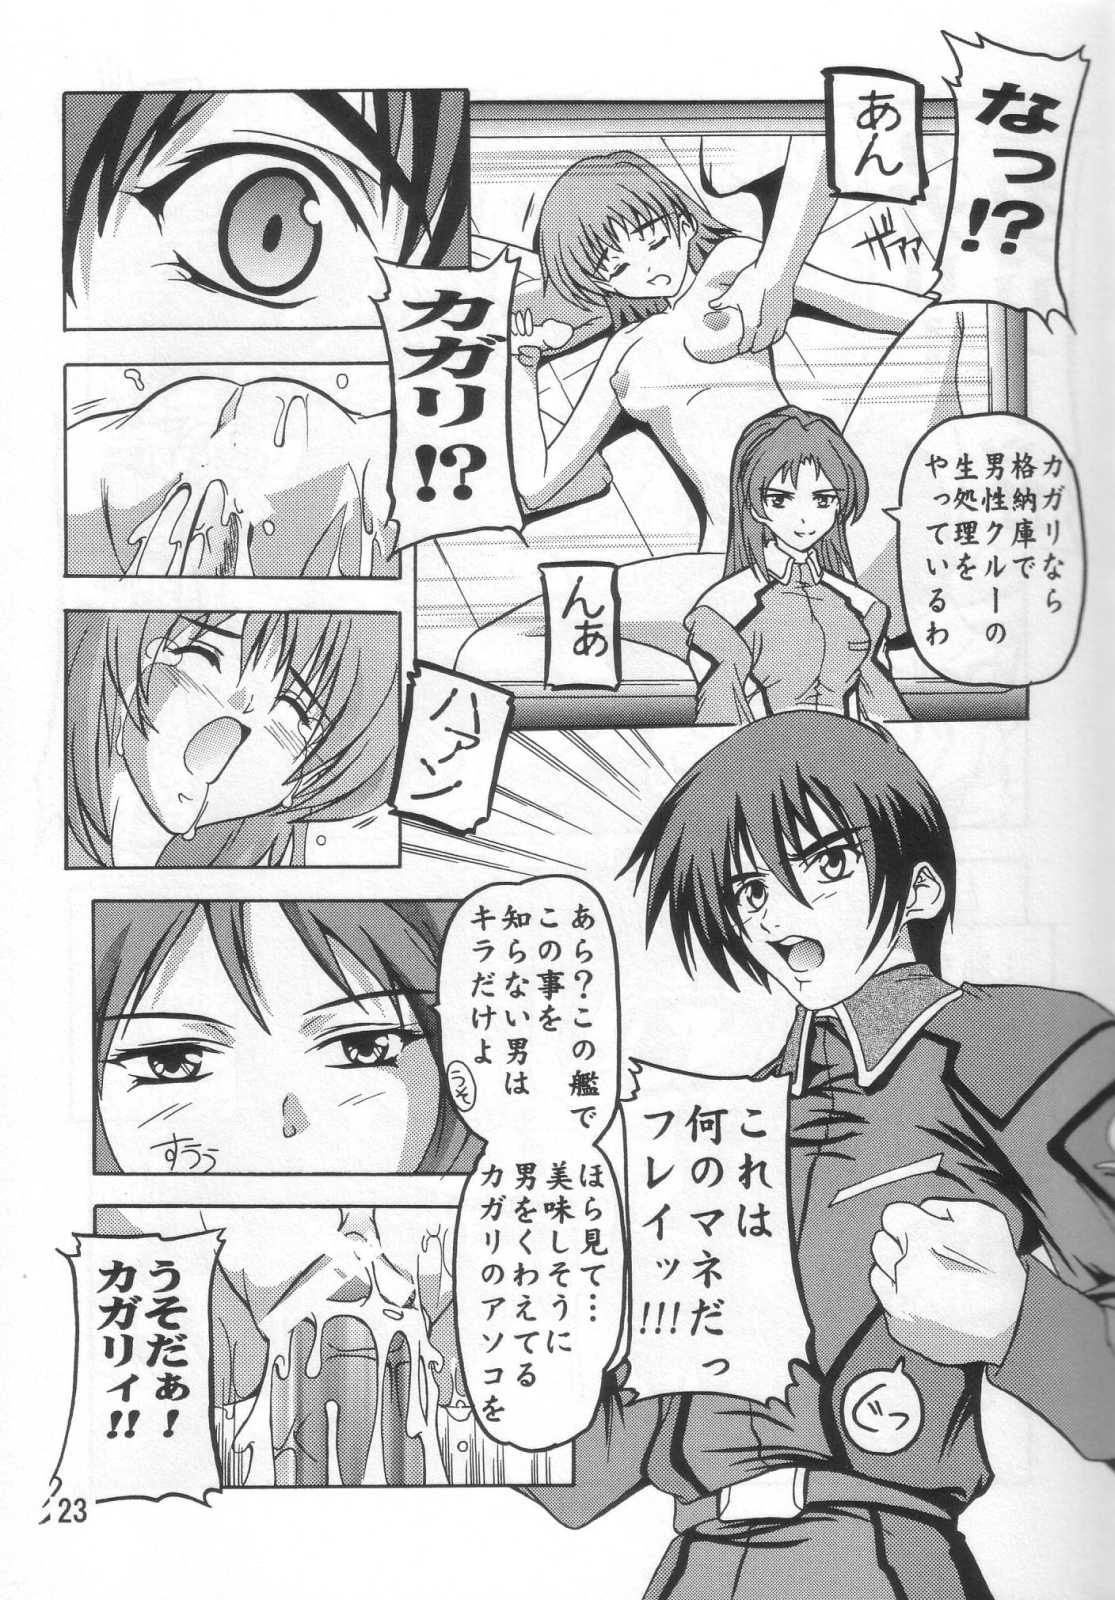 (SC21) [Studio Q (Natsuka Q-Ya)] Cagalli Mark 2 (Mobile Suit Gundam SEED) (サンクリ21) [すたぢおQ (奈塚Q弥)] Cagalli まぁ～くつぅ～ (機動戦士ガンダムSEED)